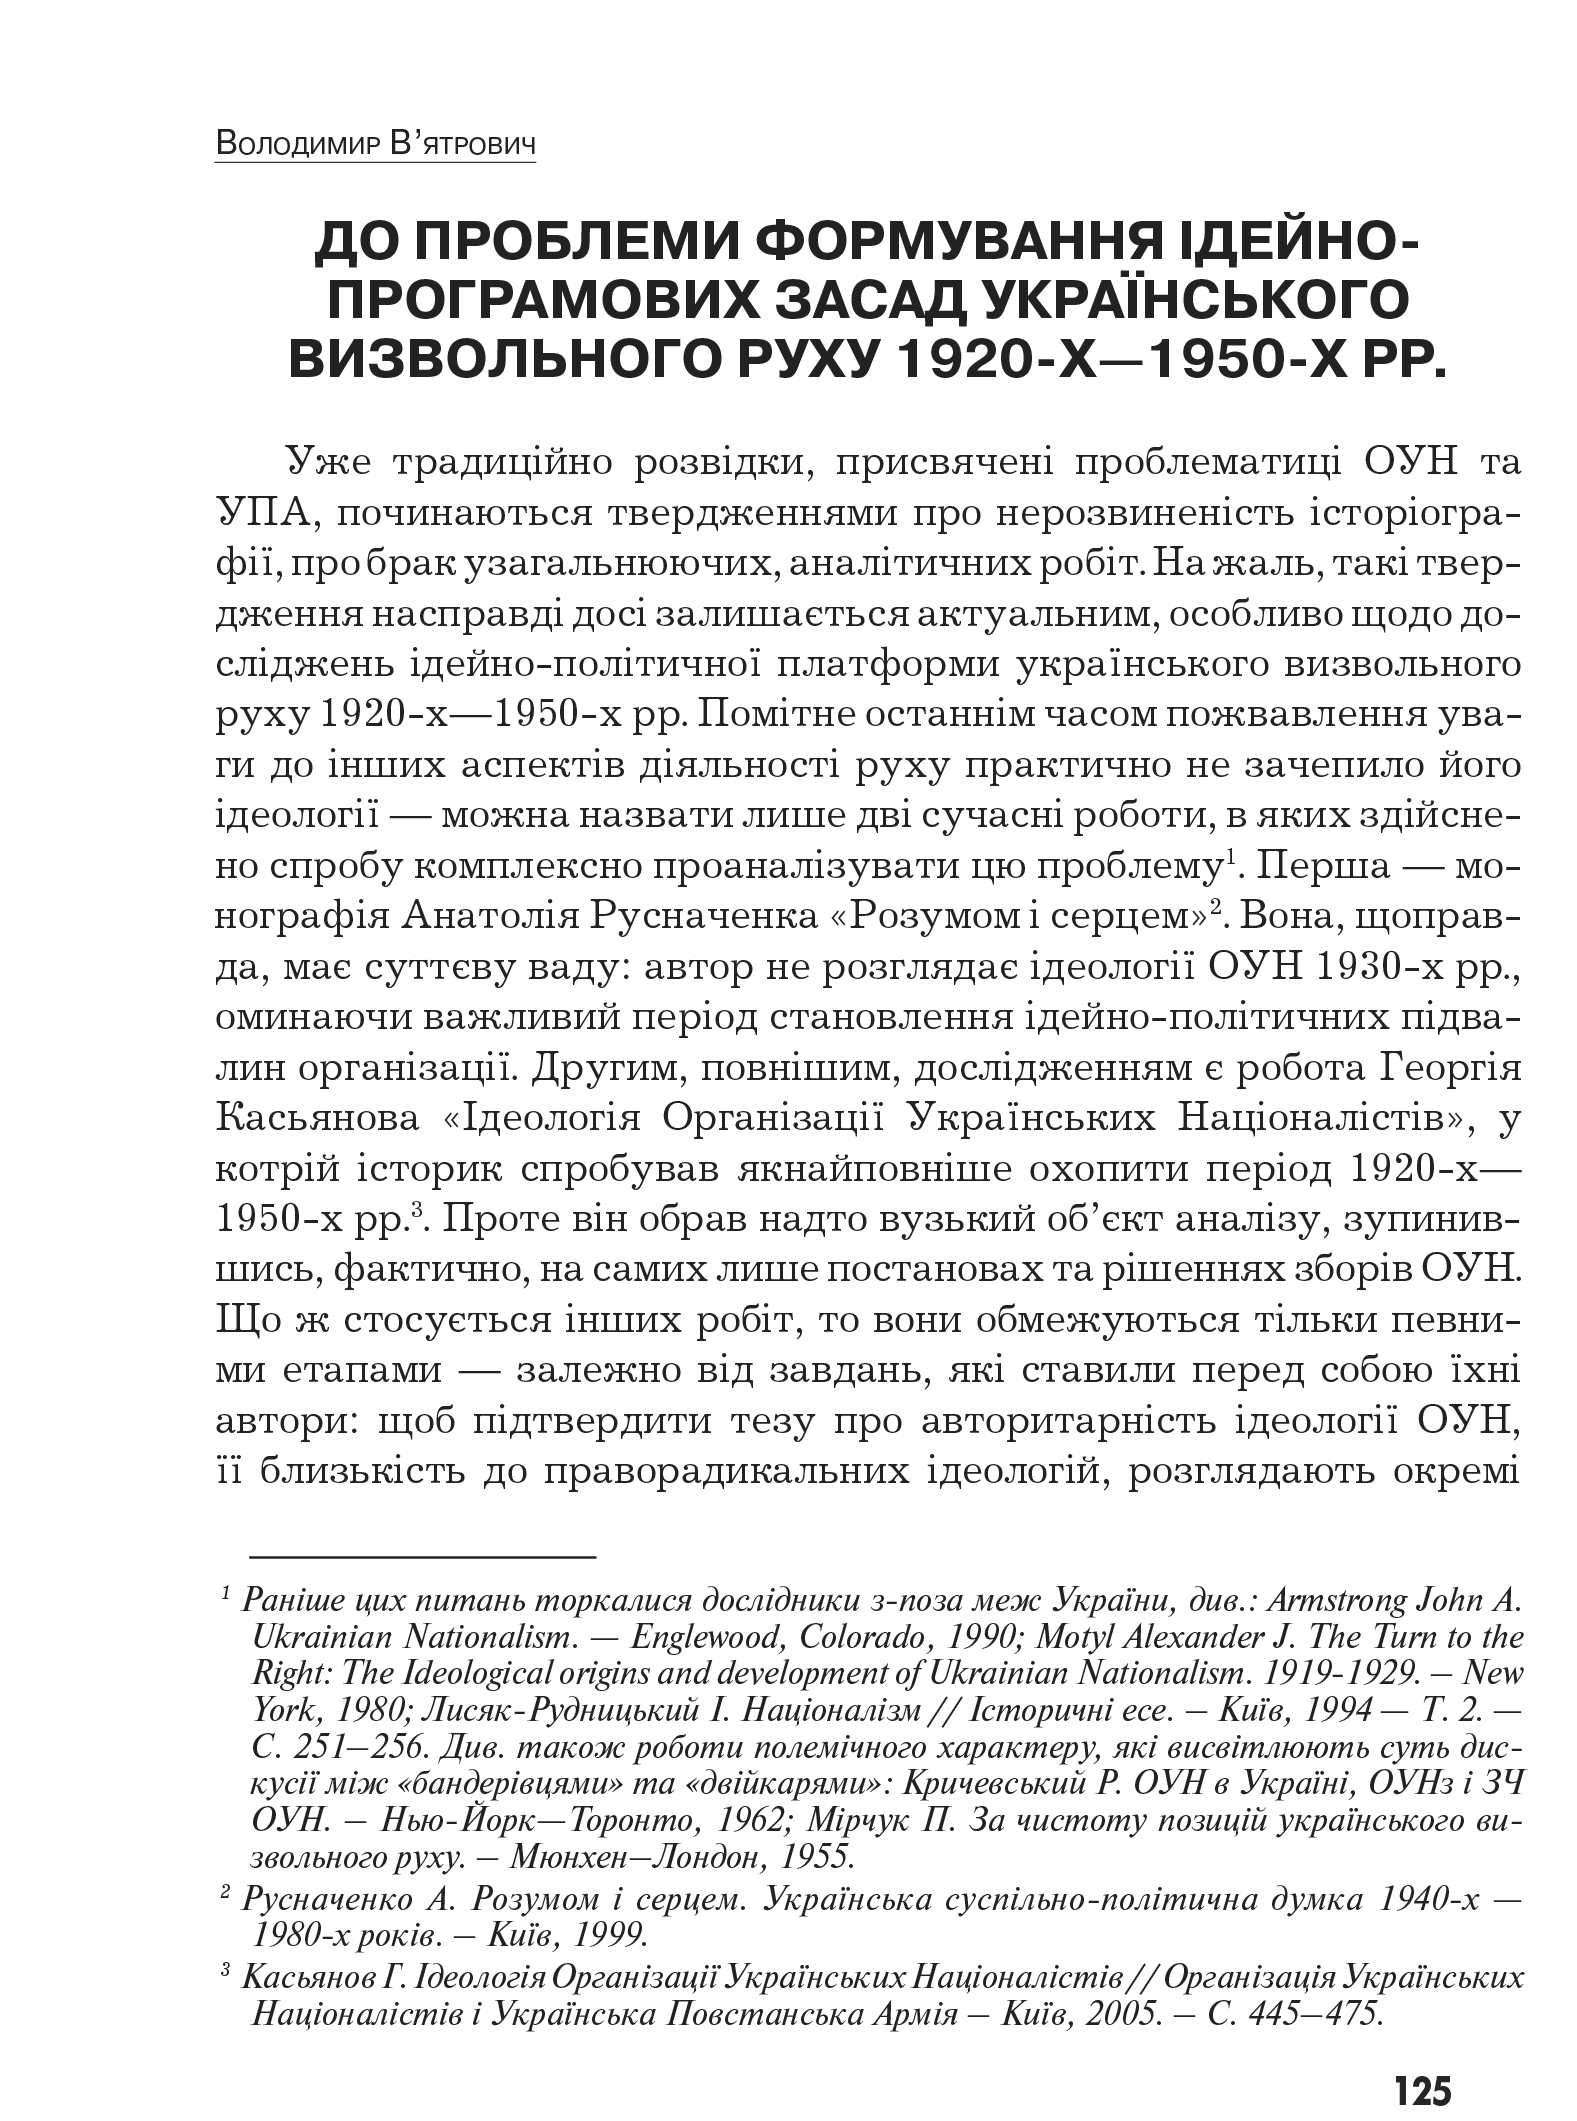 Український визвольний рух №9, ст. 125 - 137